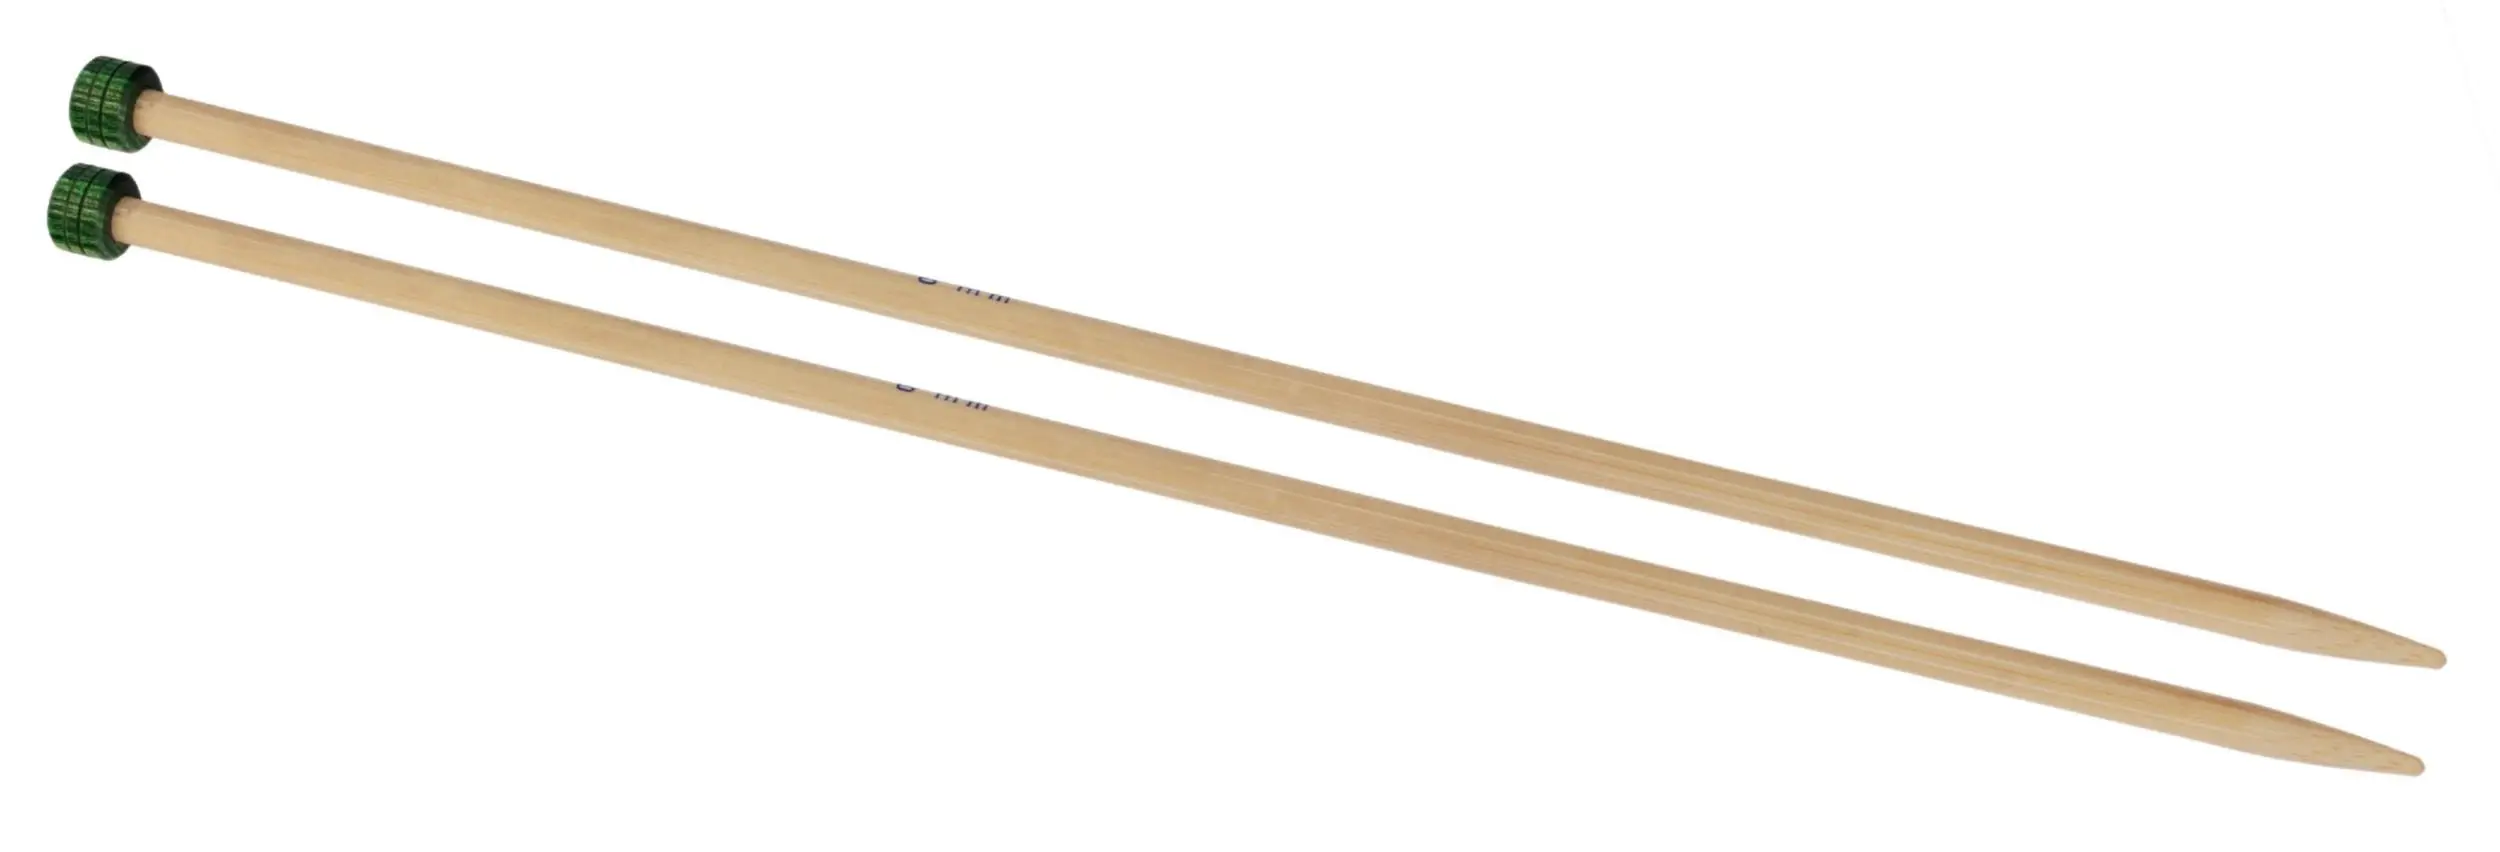 22337 Спиці прямі Bamboo KnitPro, 30 см, 3.25 мм